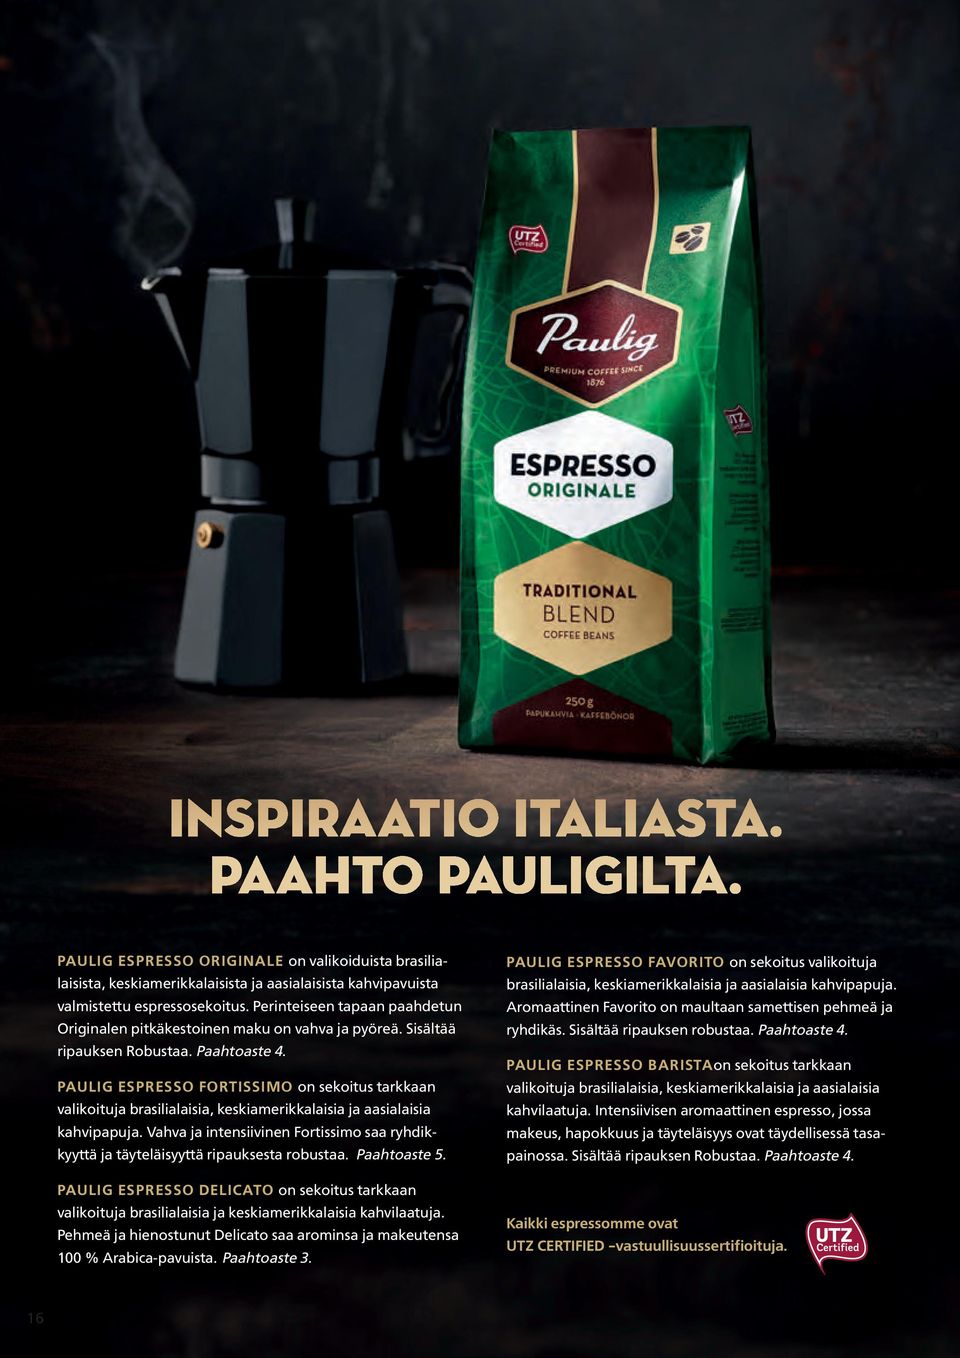 PAULIG ESPRESSO FORTISSIMO on sekoitus tarkkaan valikoituja brasilialaisia, keskiamerikkalaisia ja aasialaisia kahvipapuja.